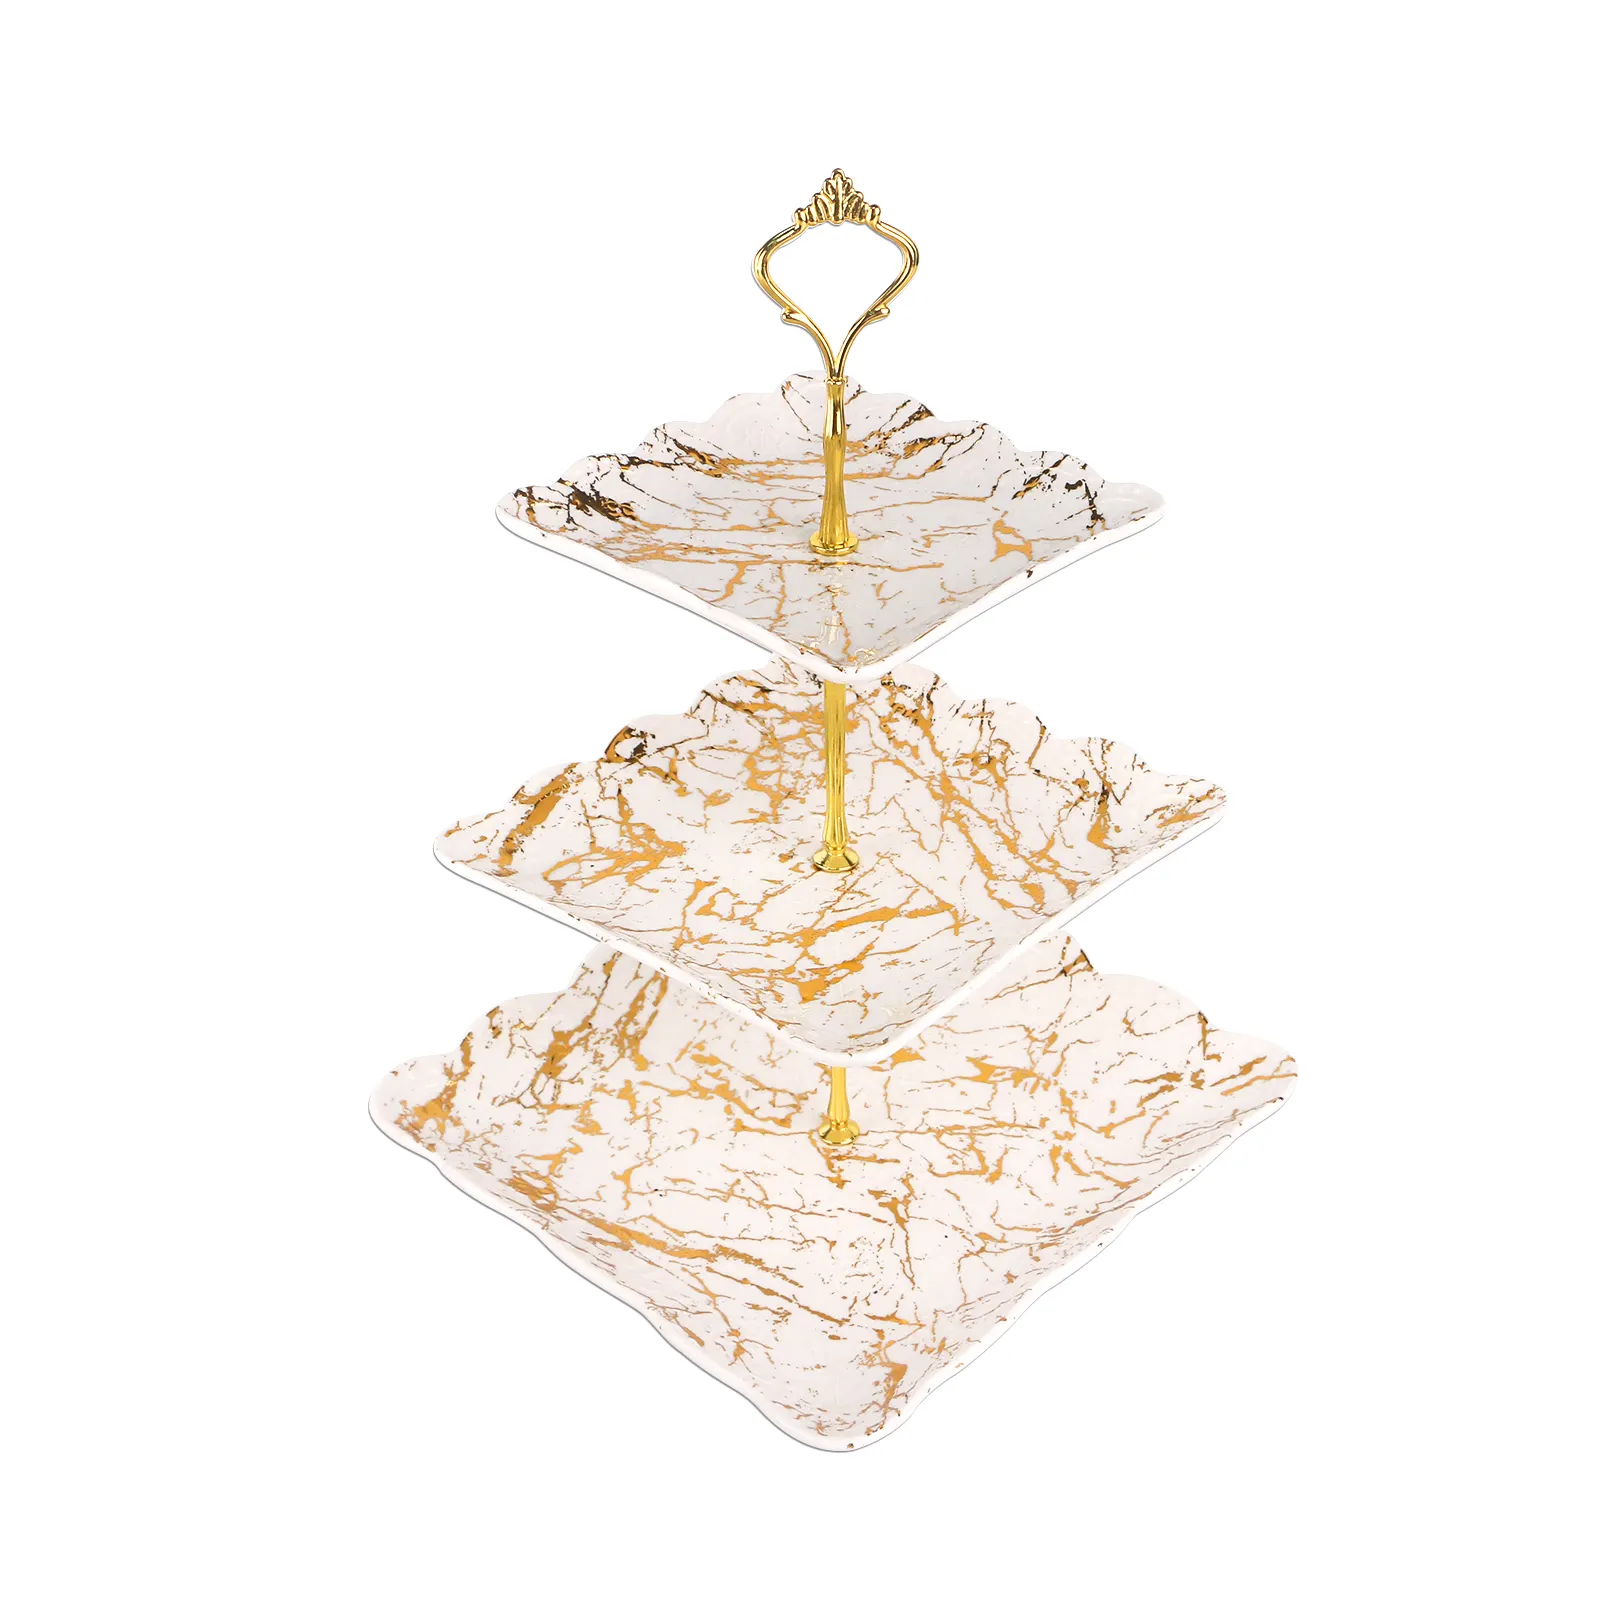 Golden Marbling White Dreistufige quadratische Platte Keramik Kuchen und Obstschalen für Geburtstag/Hochzeit Serie Kuchenst änder